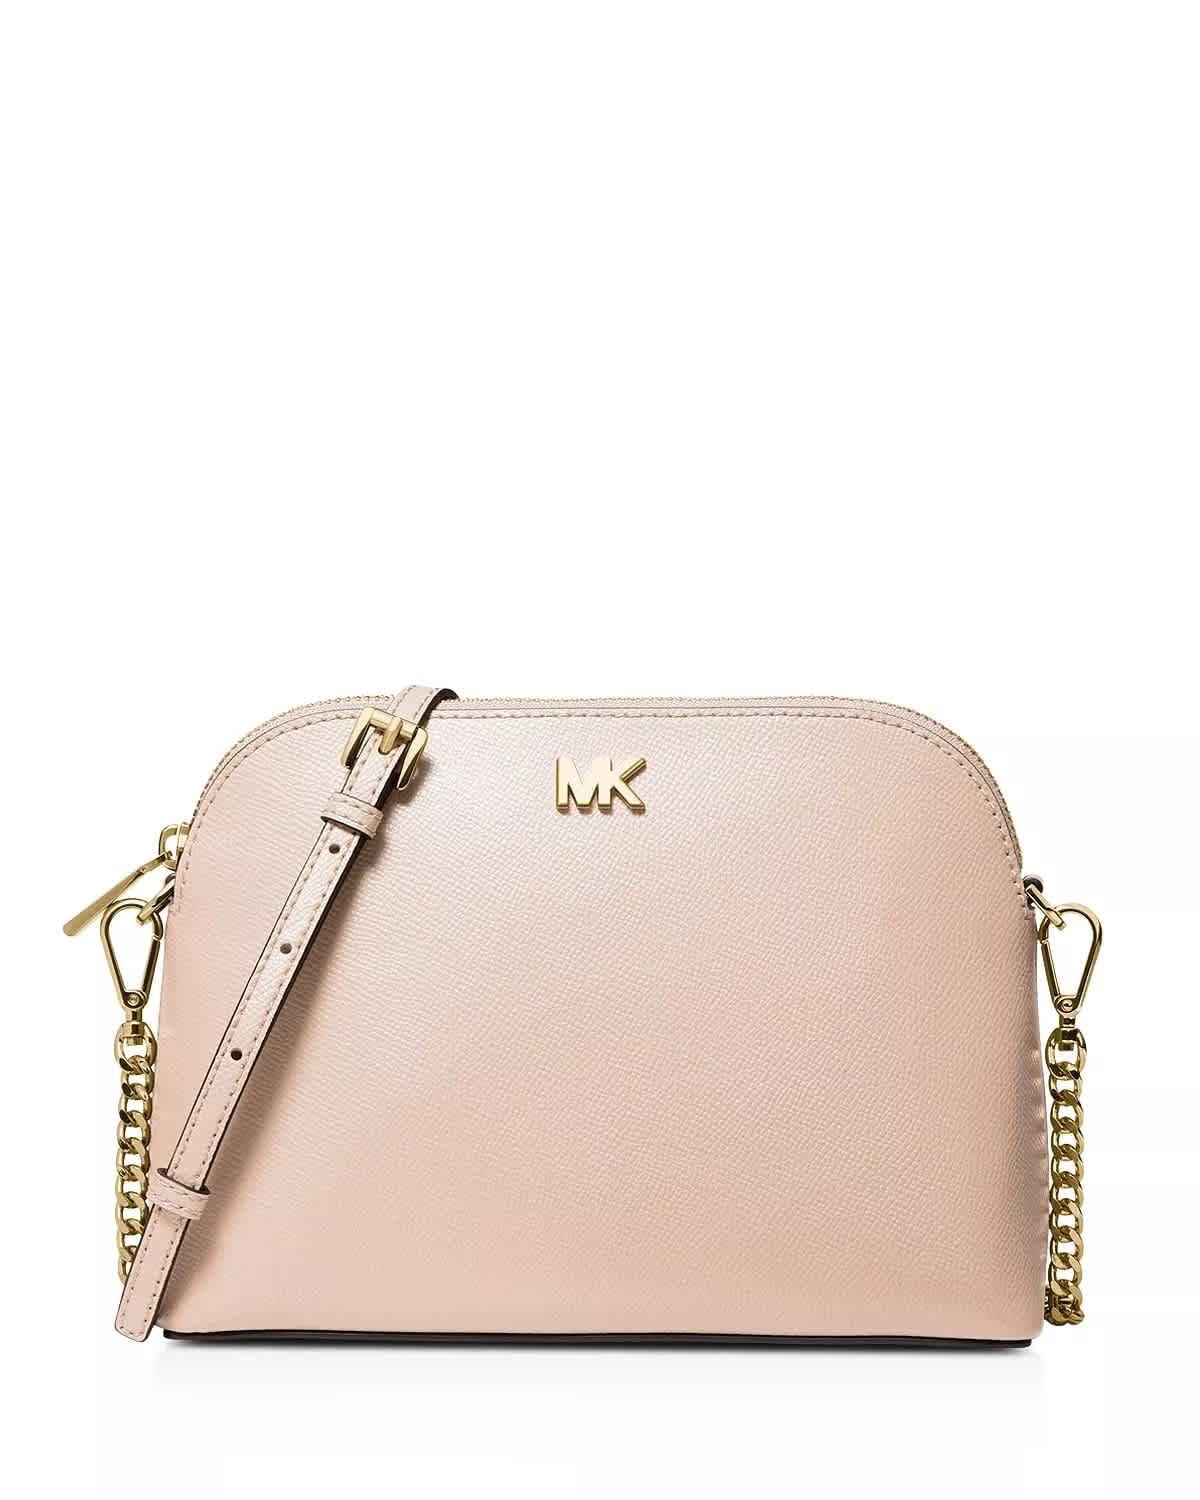 light pink mk bag